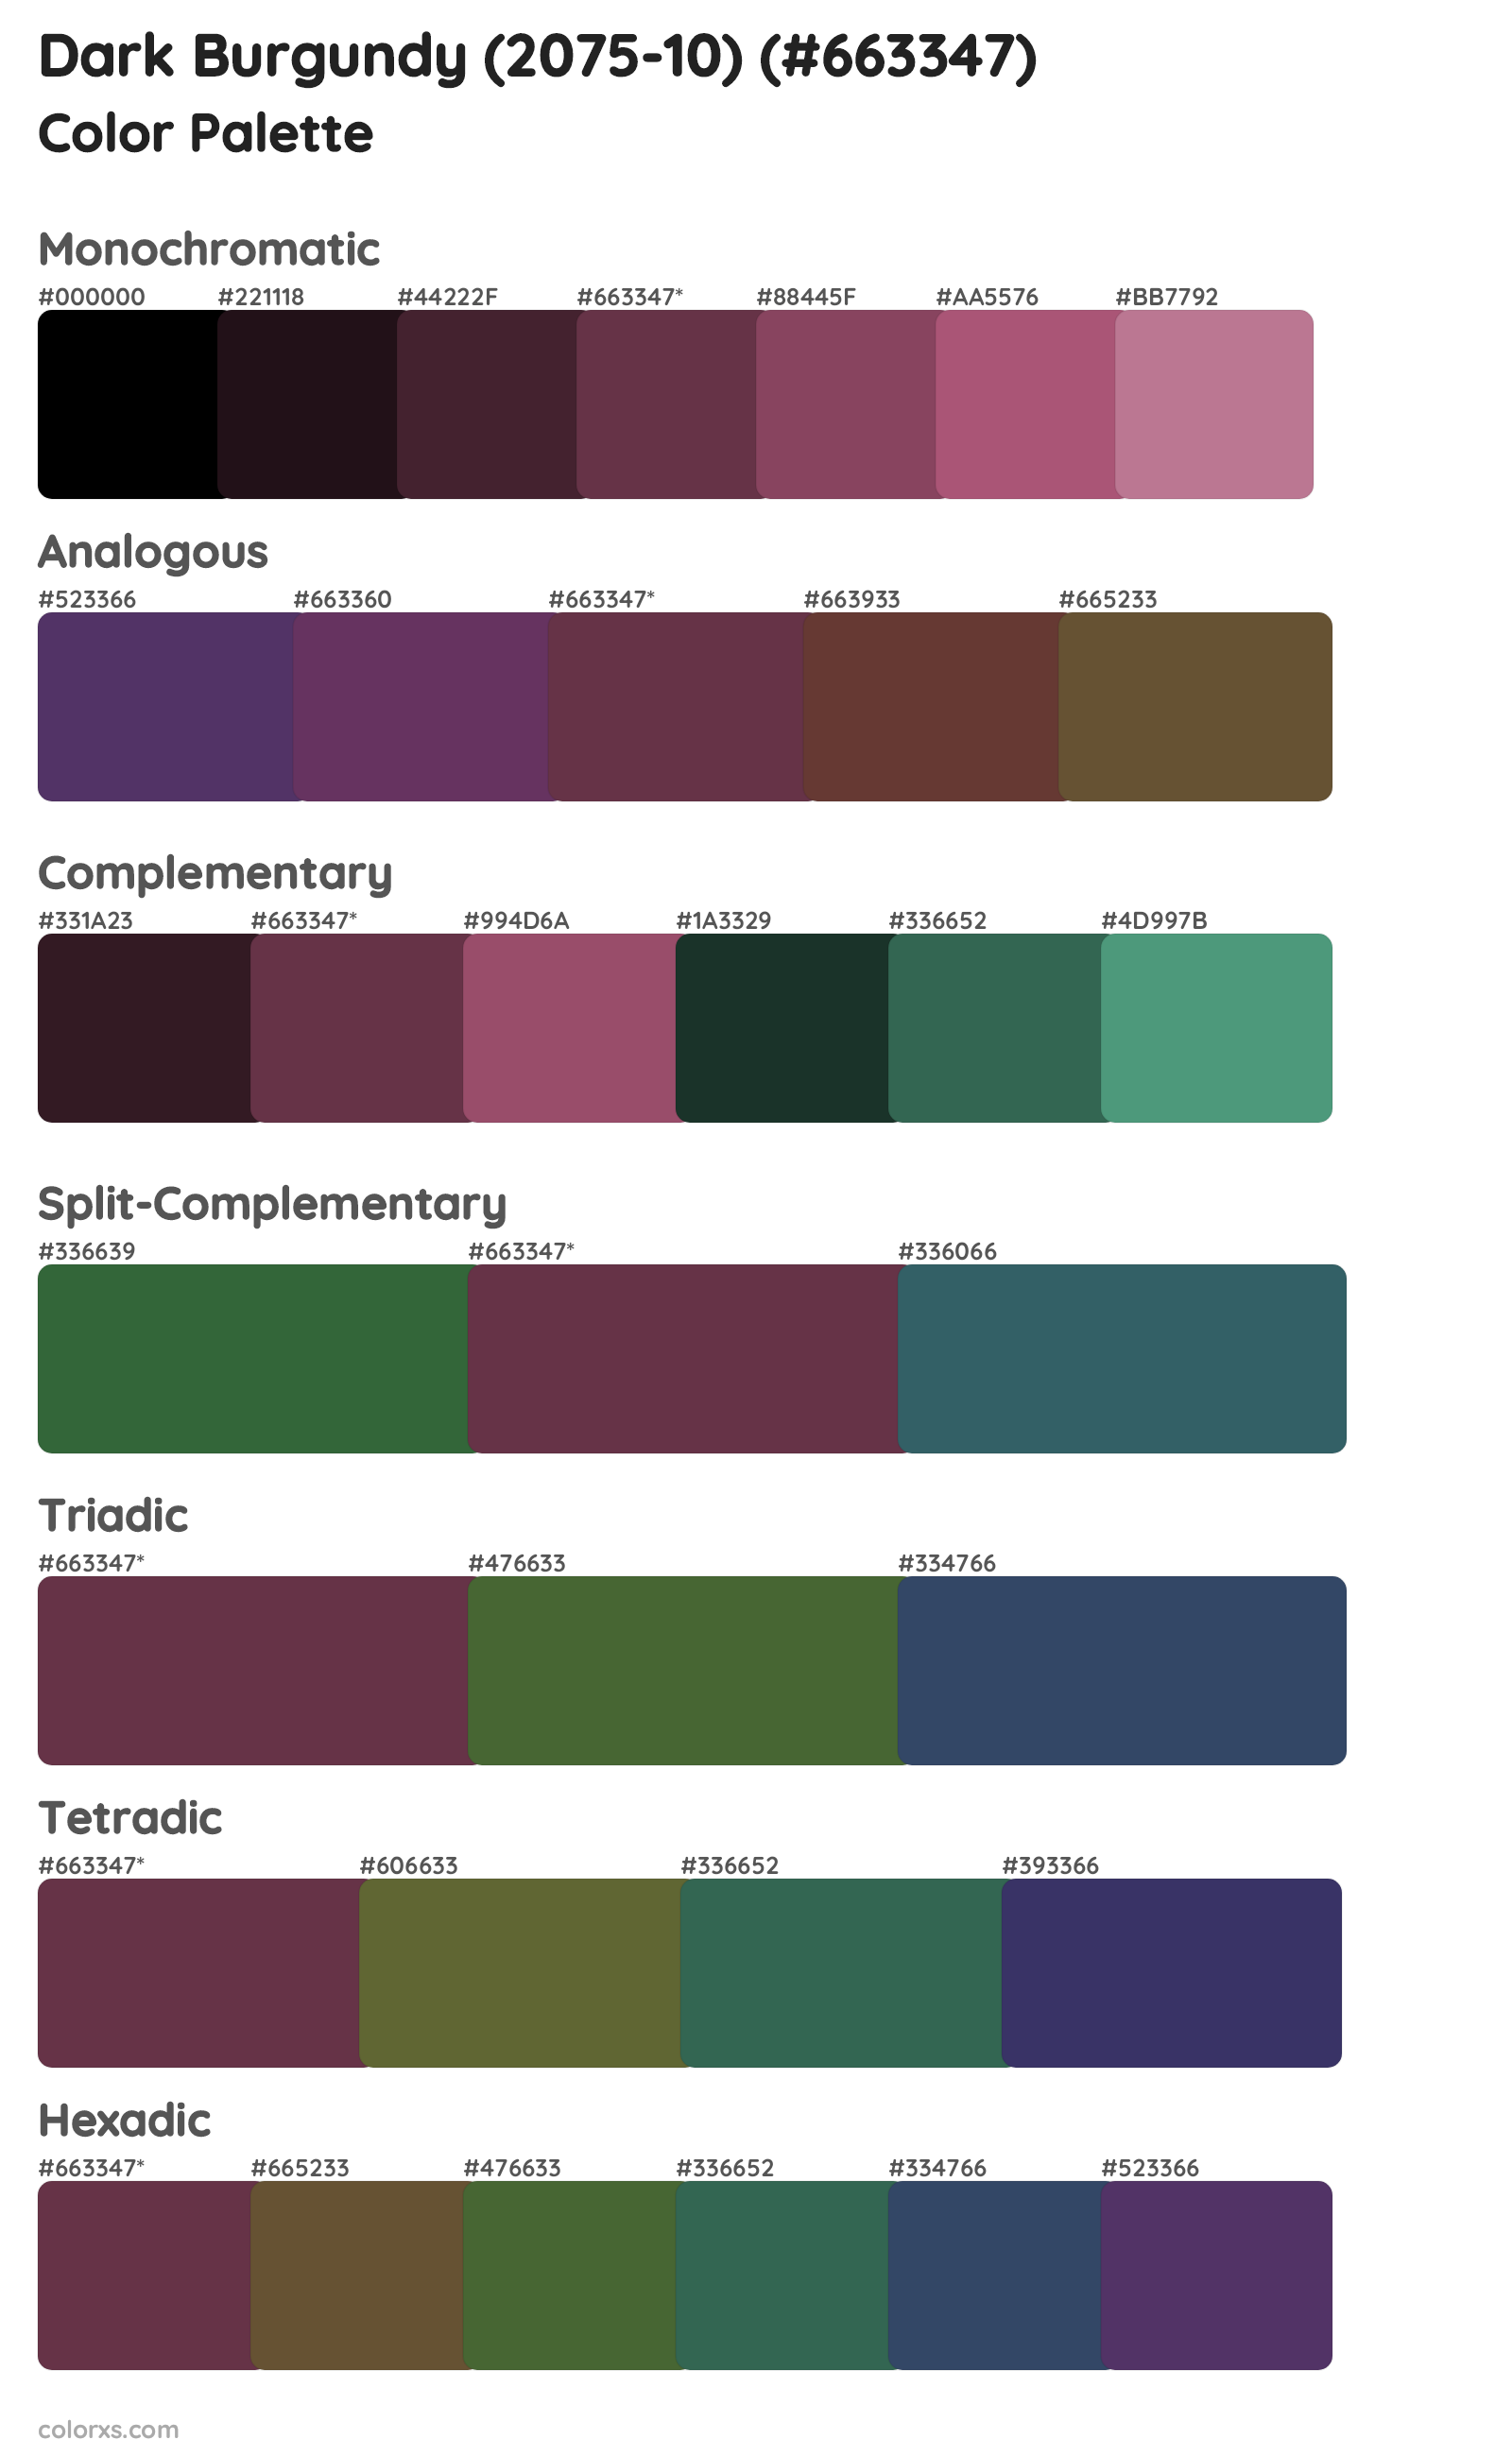 Dark Burgundy (2075-10) Color Scheme Palettes